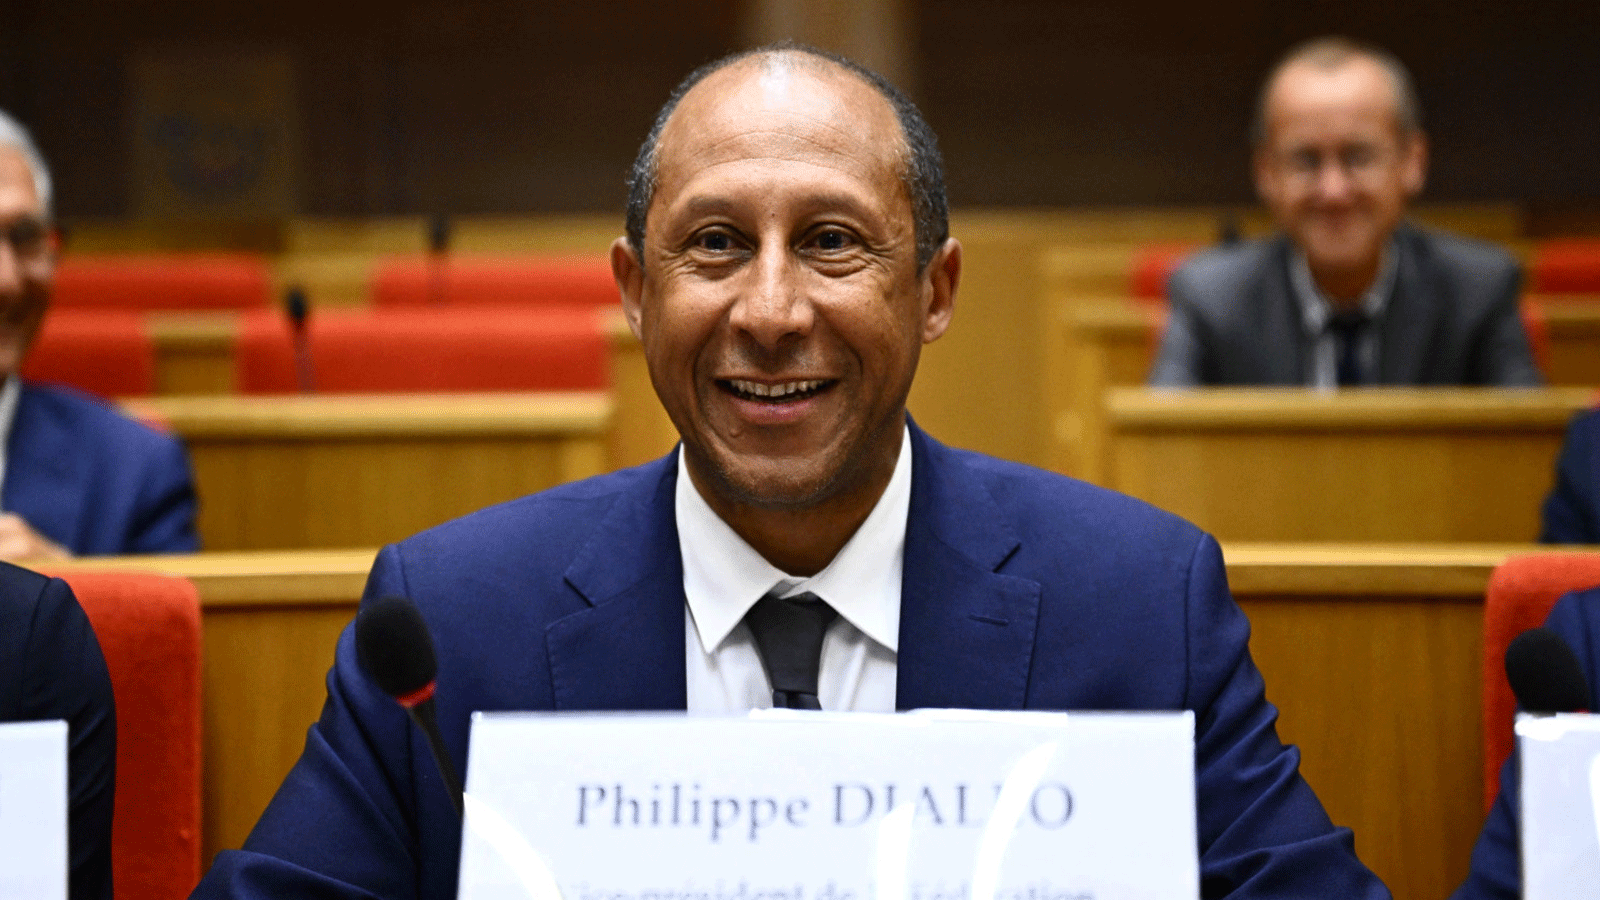 فيليب ديالو يتولى رئاسة الاتحاد الفرنسي لكرة القدم